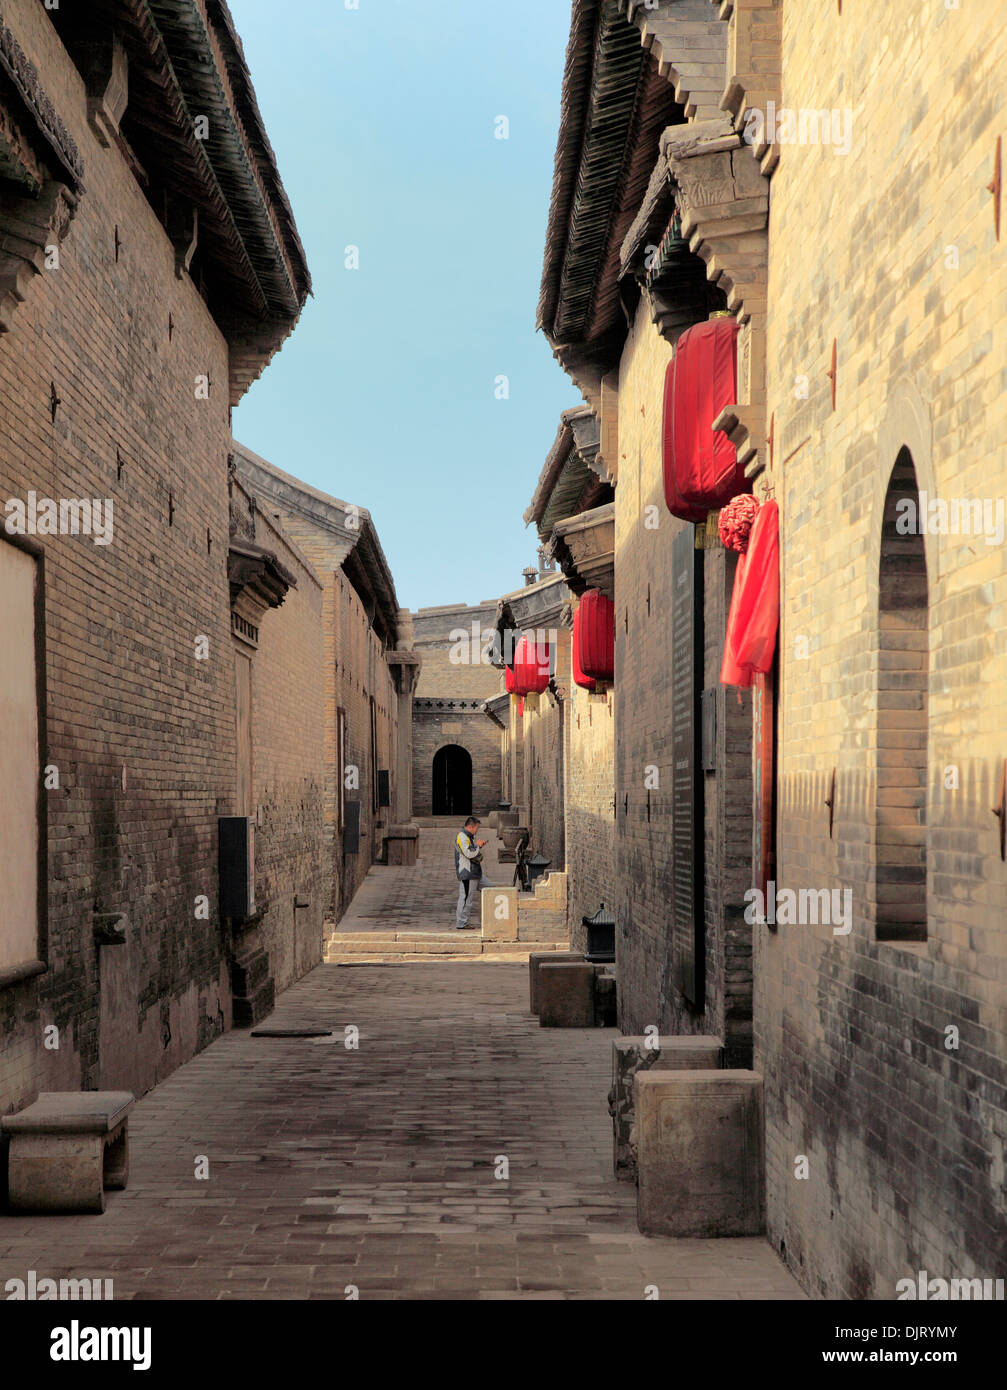 Street dans la vieille ville, Pingyao, Shanxi, Chine Banque D'Images